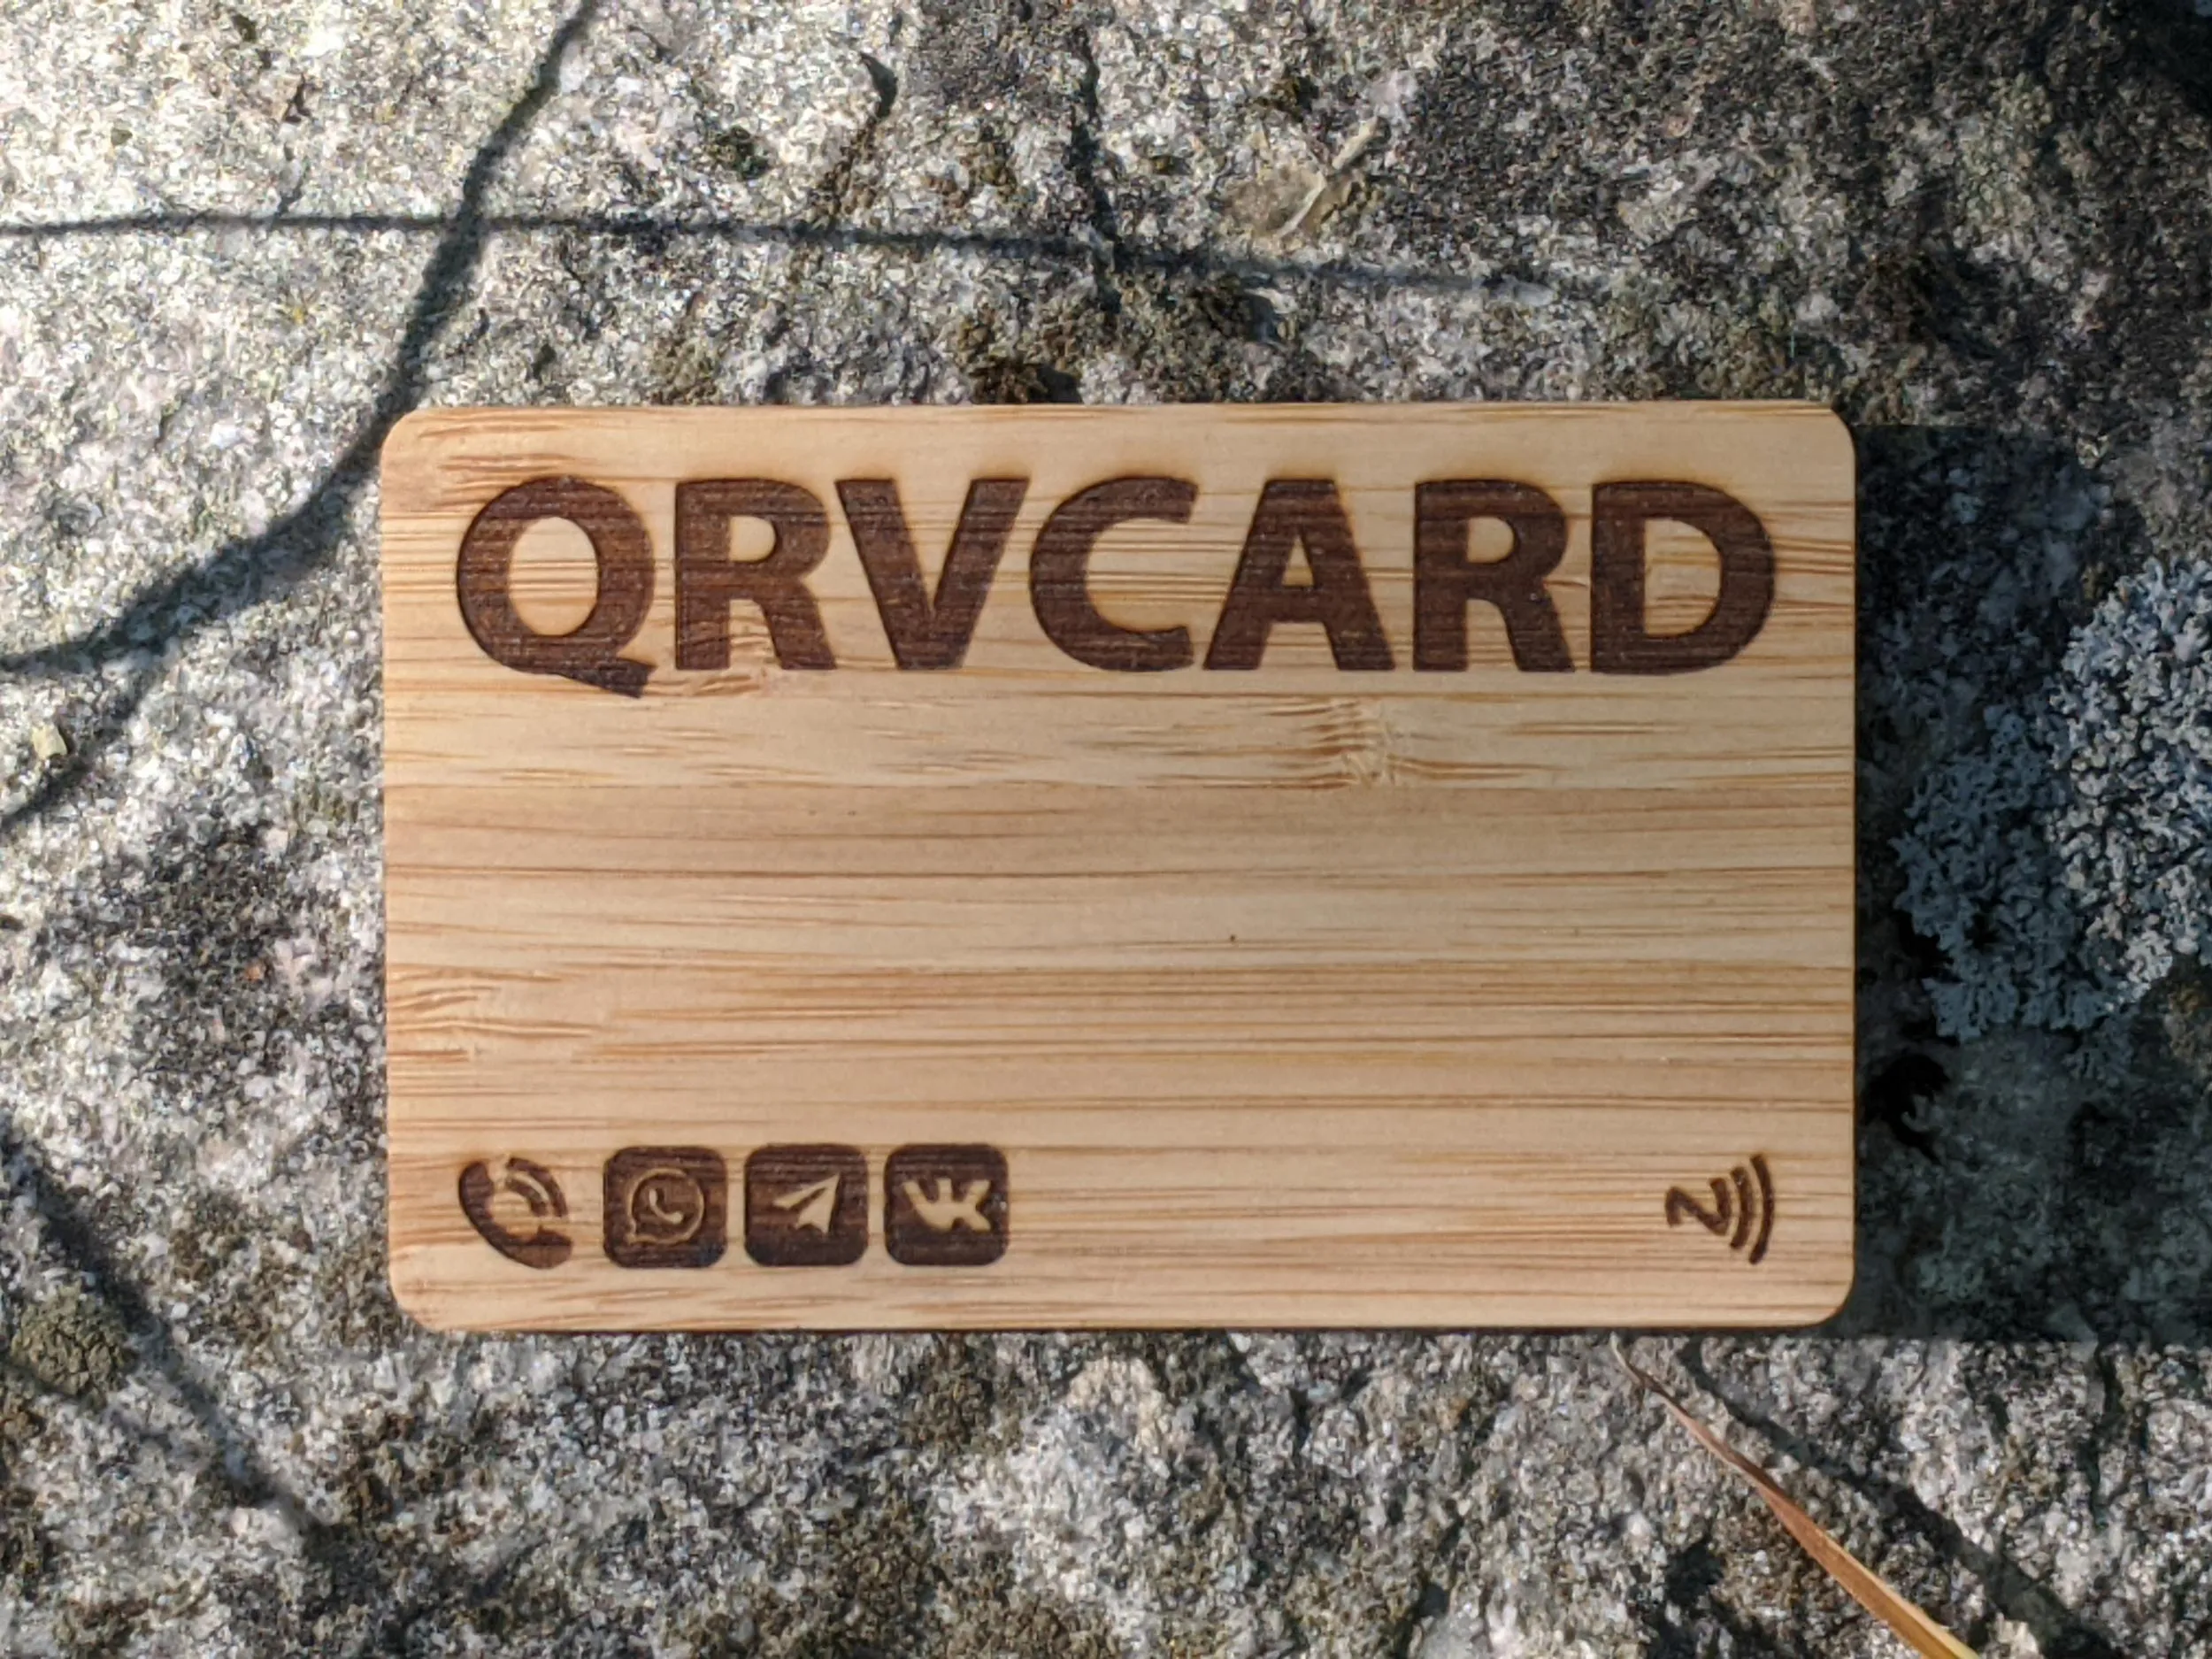 Умная визитка из Бамбука с NFC чипом и QR-кодом с лазерной гравировкой